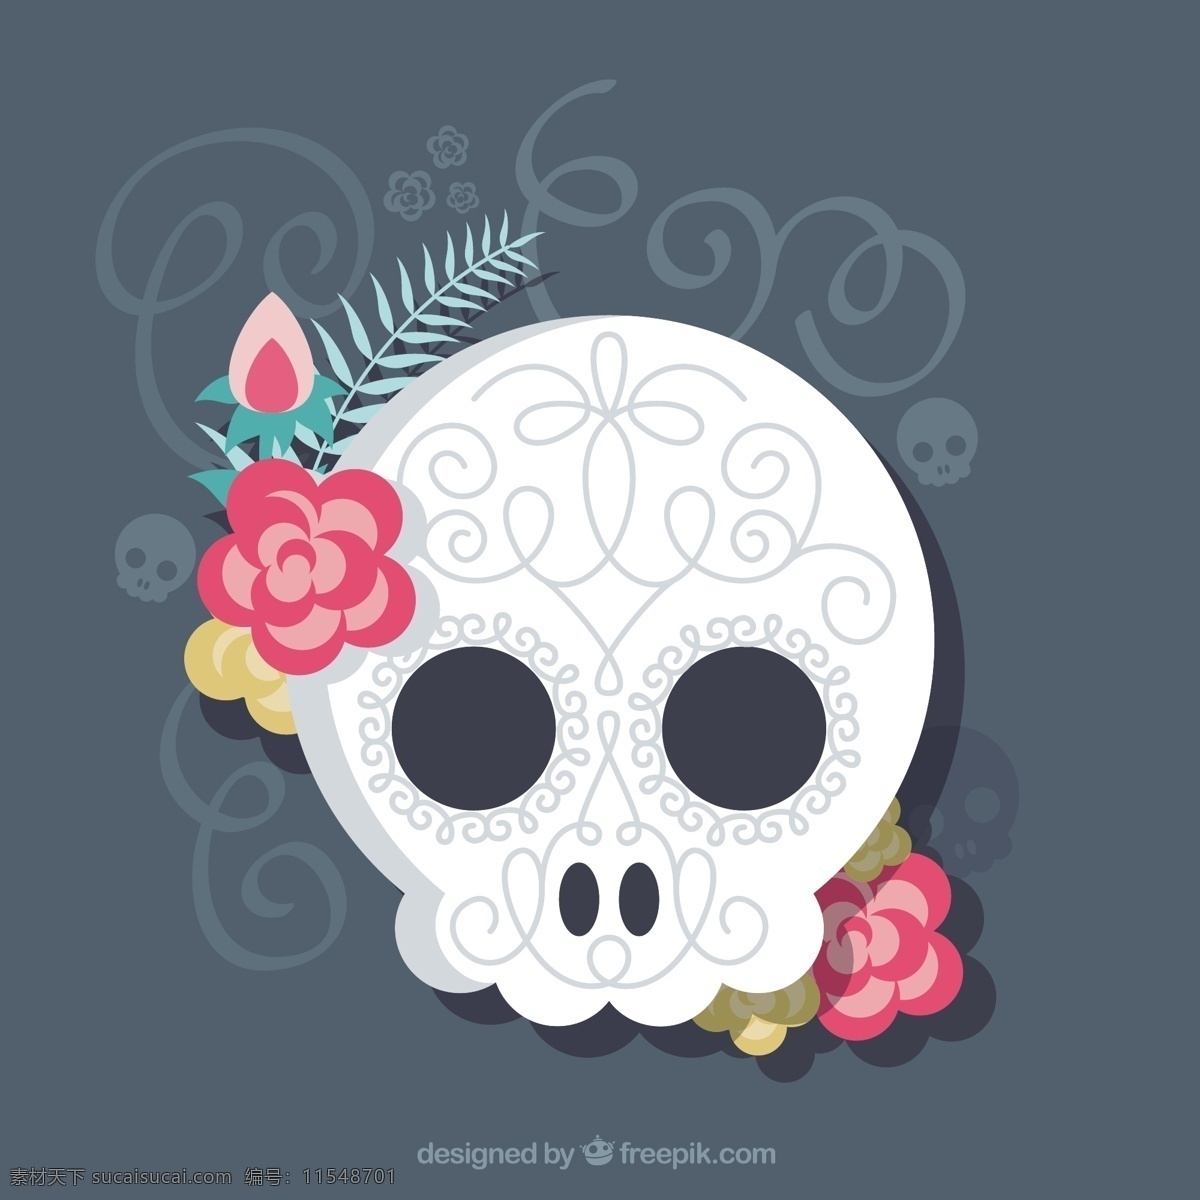 扁平 装饰 头骨 背景 花卉 自然 花卉背景 颜色 平面 丰富多彩 花卉装饰 平面设计 自然背景 骨骼